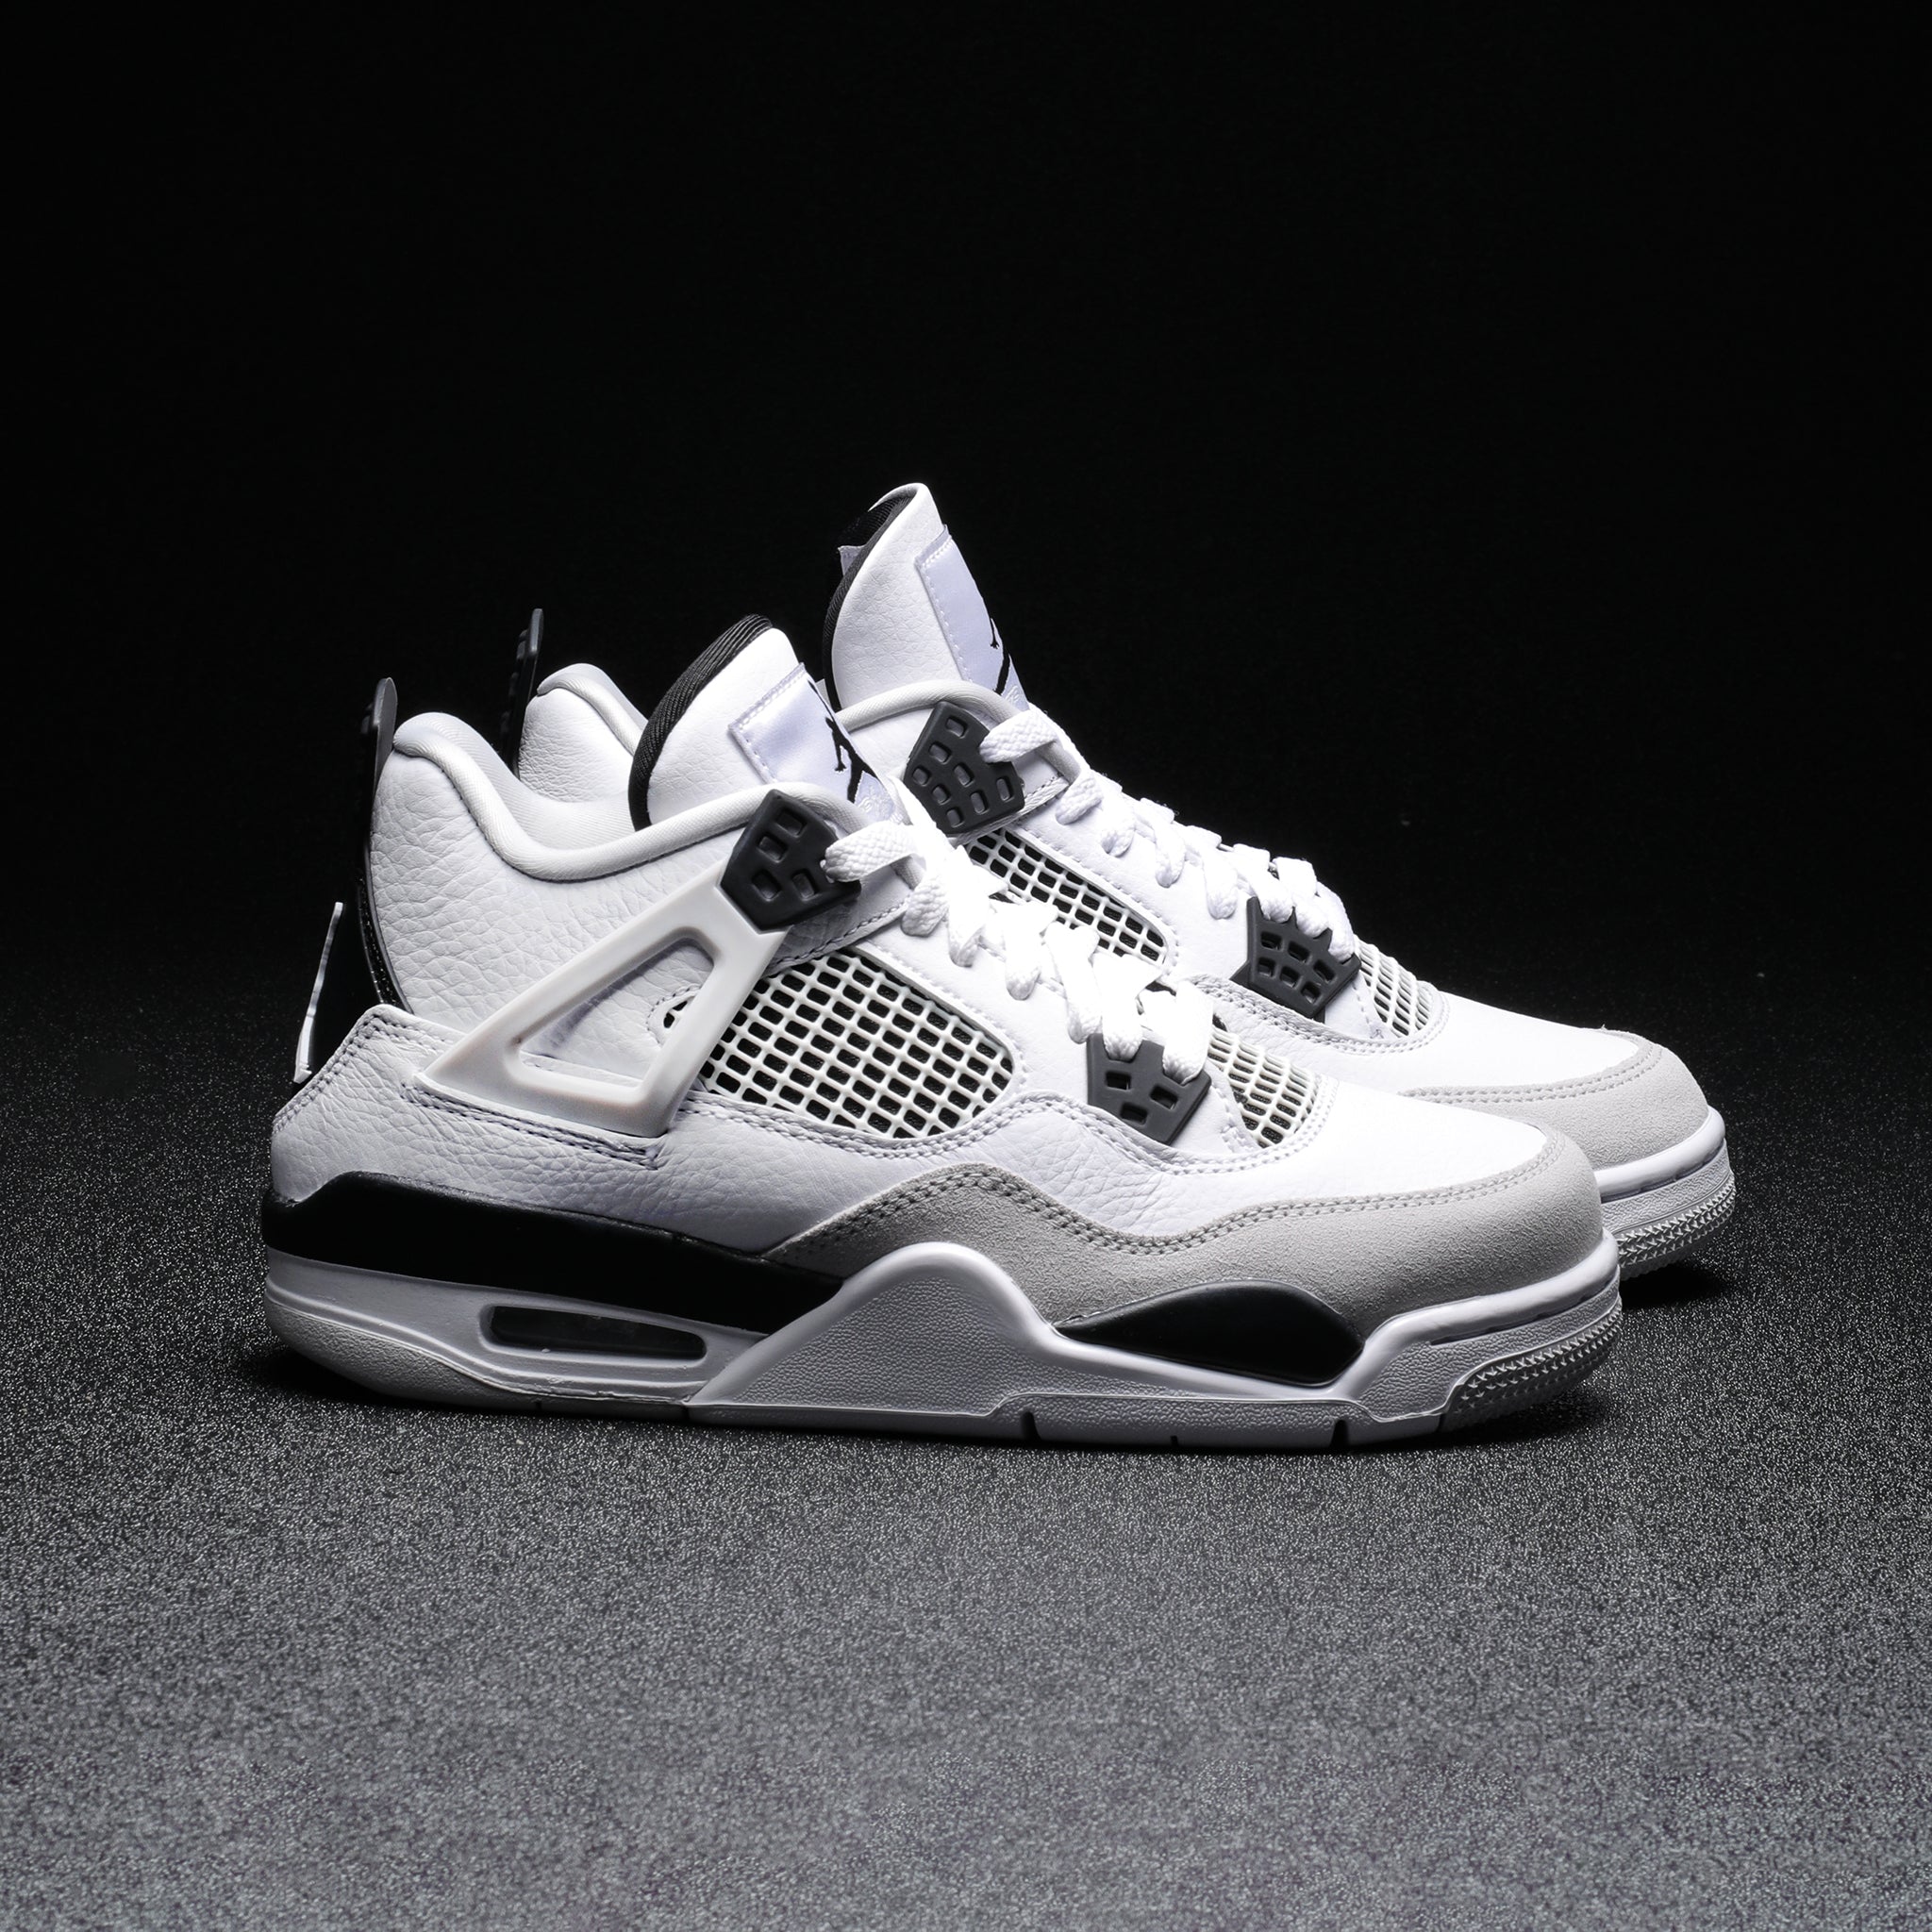 Izar lavandería enfermo Nike Air Jordan 4 Retro "White and Black" – The Darkside Initiative